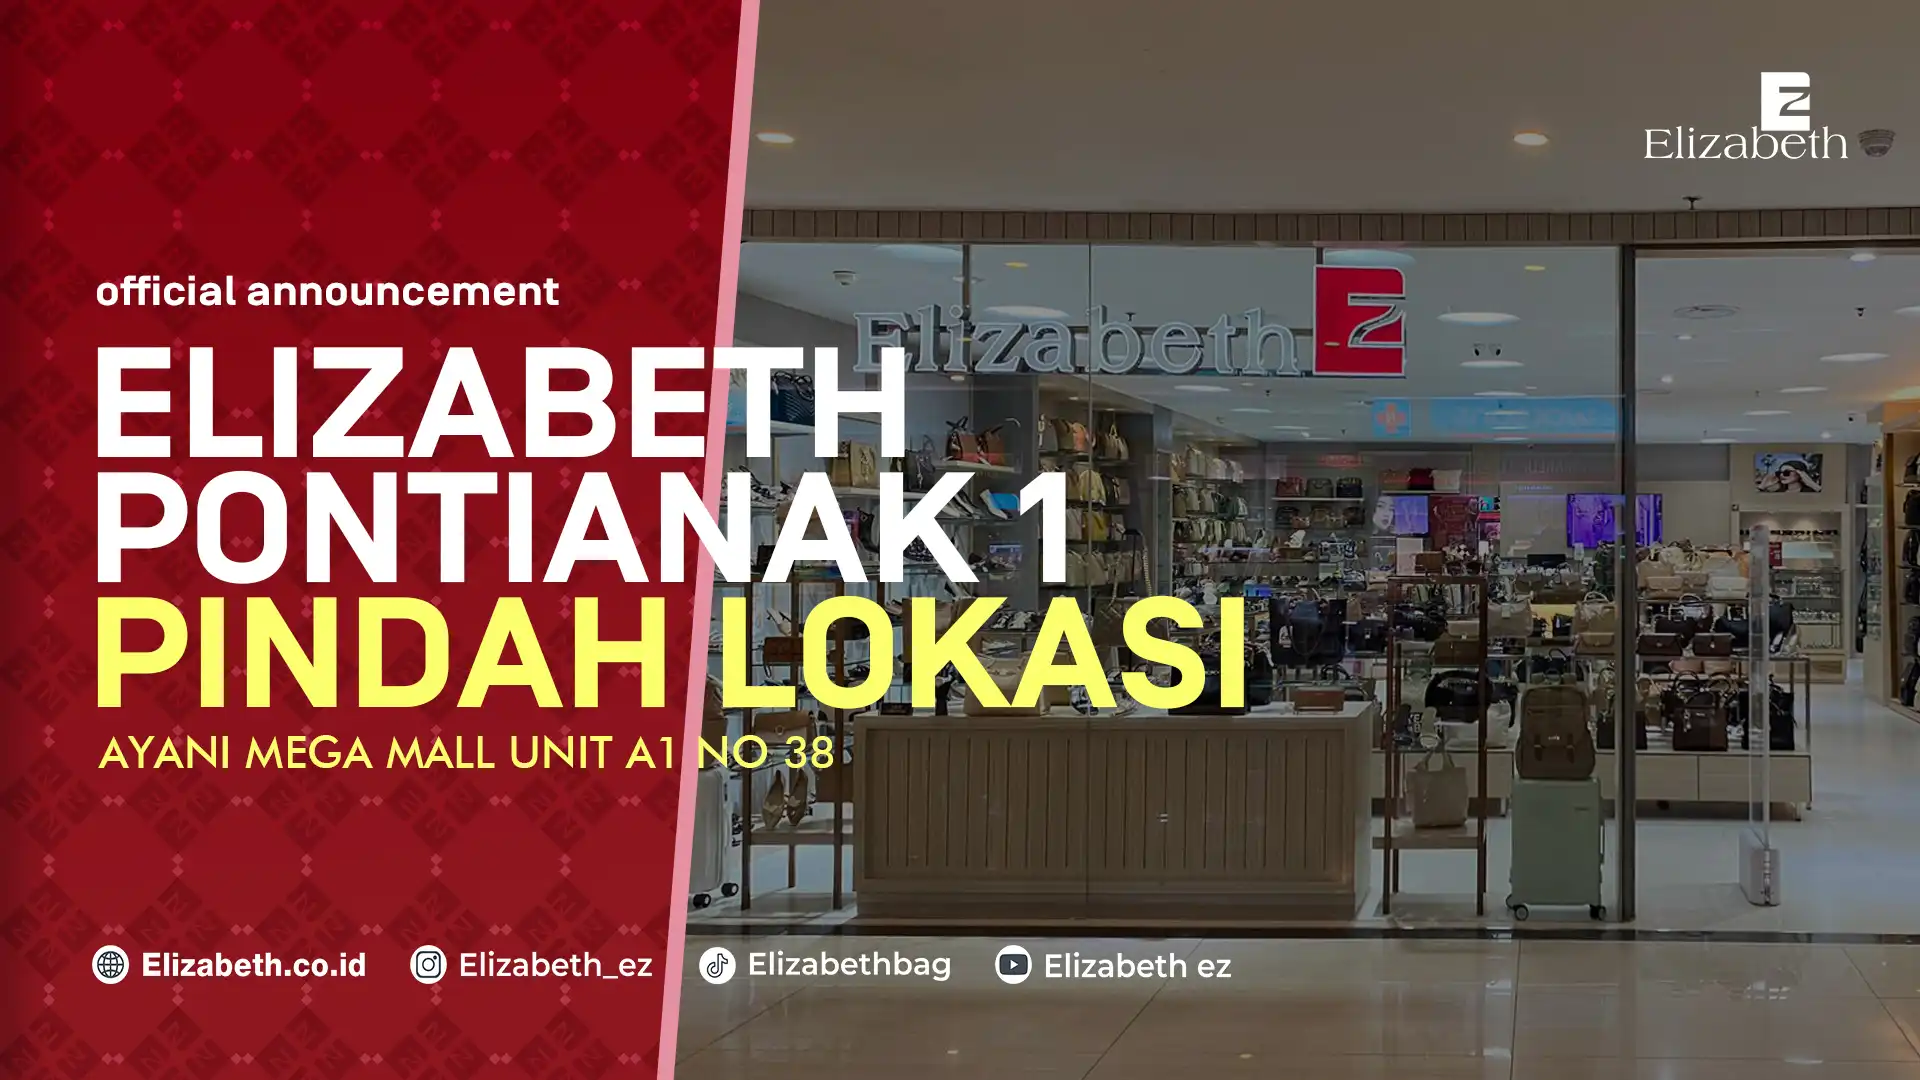 Toko Elizabeth Pontianak di Ayani Mega Mall